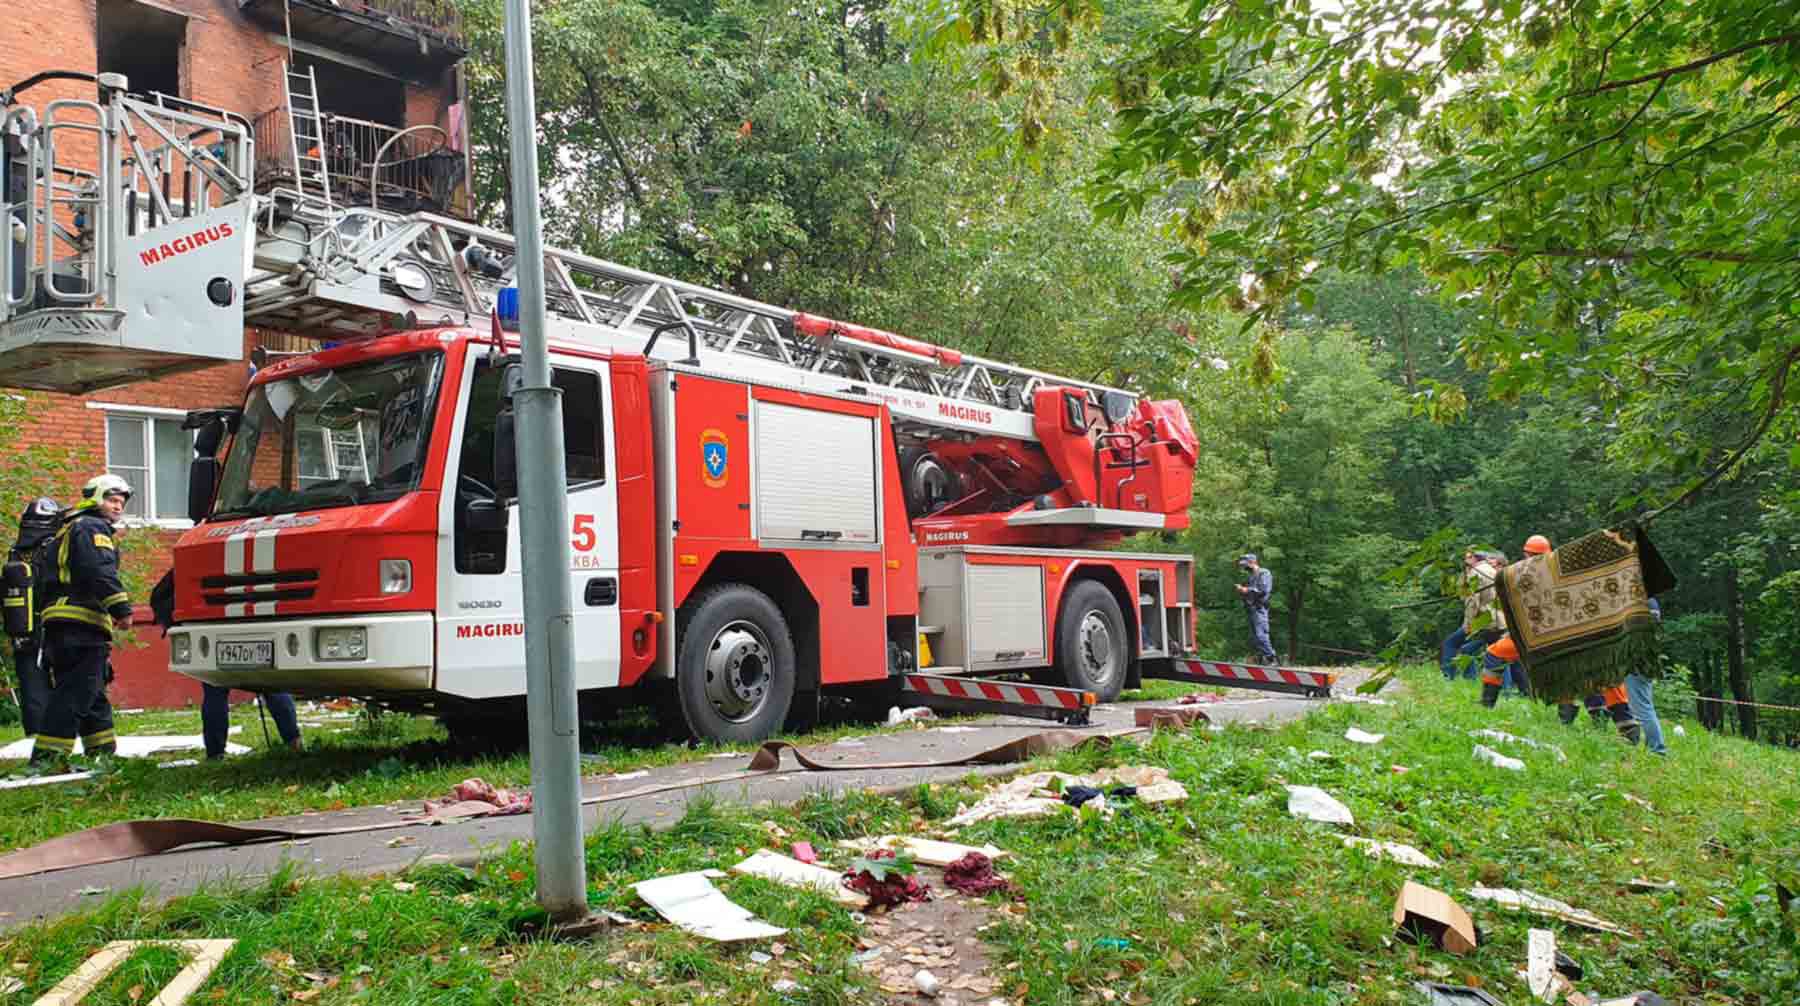 Dailystorm - Газовый баллончик мог стать причиной пожара в доме на западе Москвы